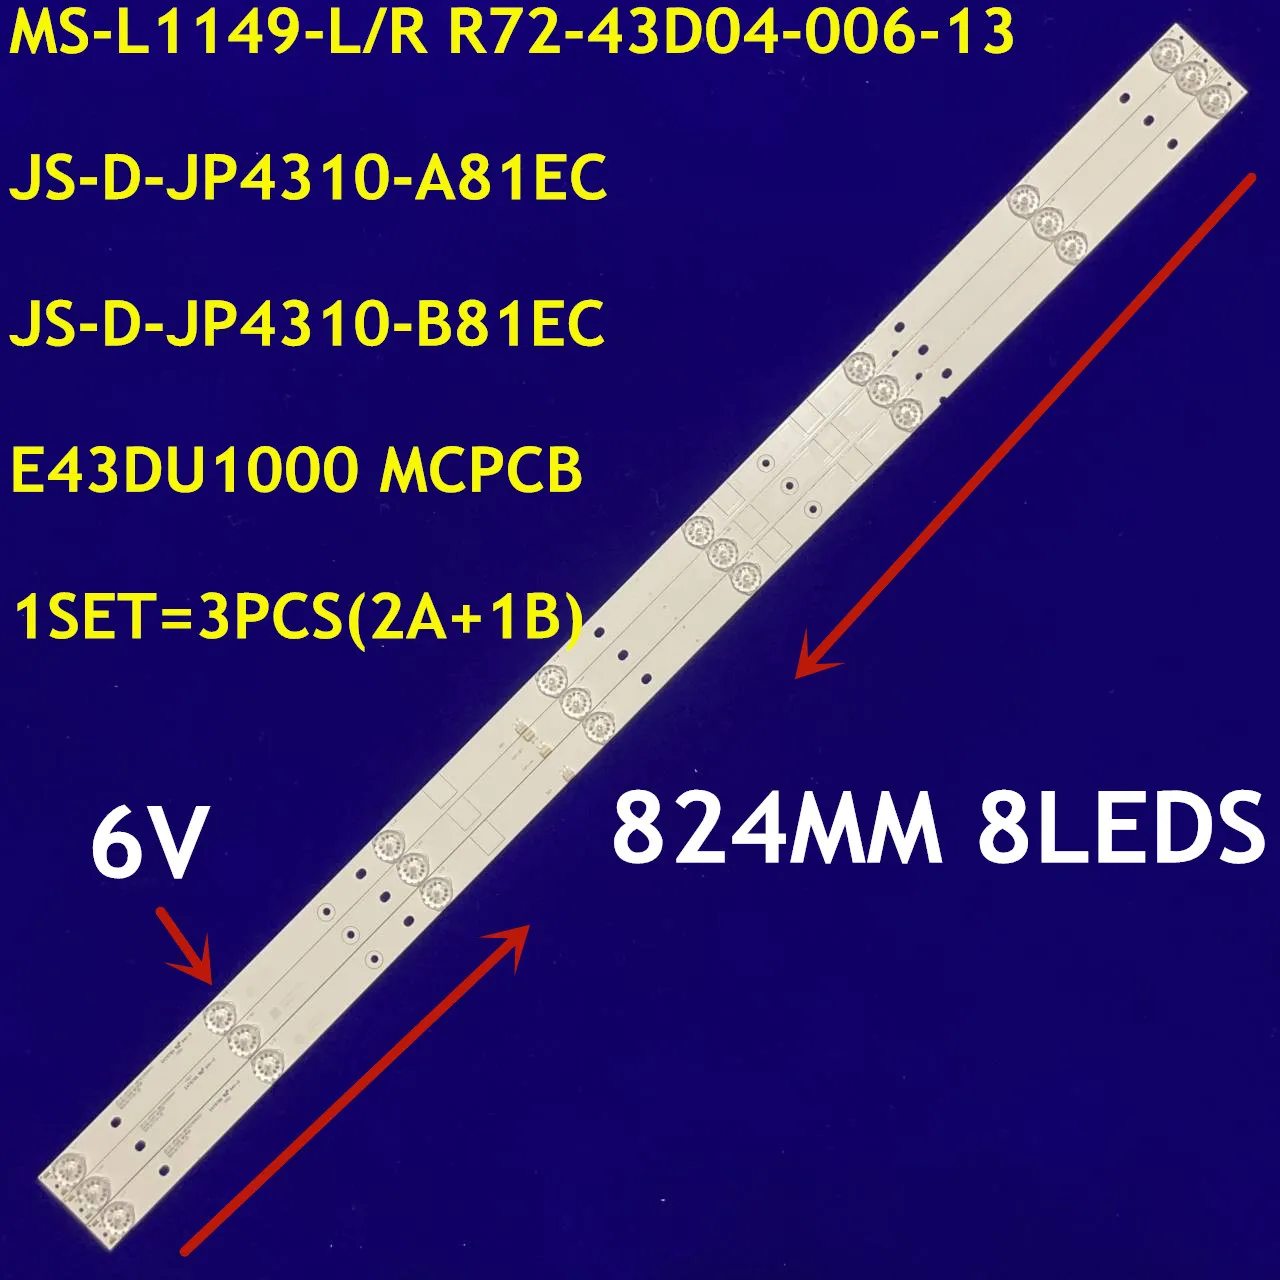 824MM podświetlenie LED 8 lampa dla kai 43-calowy telewizor JS-D-JP4310-A81EC JS-D-JP4310-B81EC E43DU1000 MCPCB MS-L1149-L/R R72-43D04-006-1